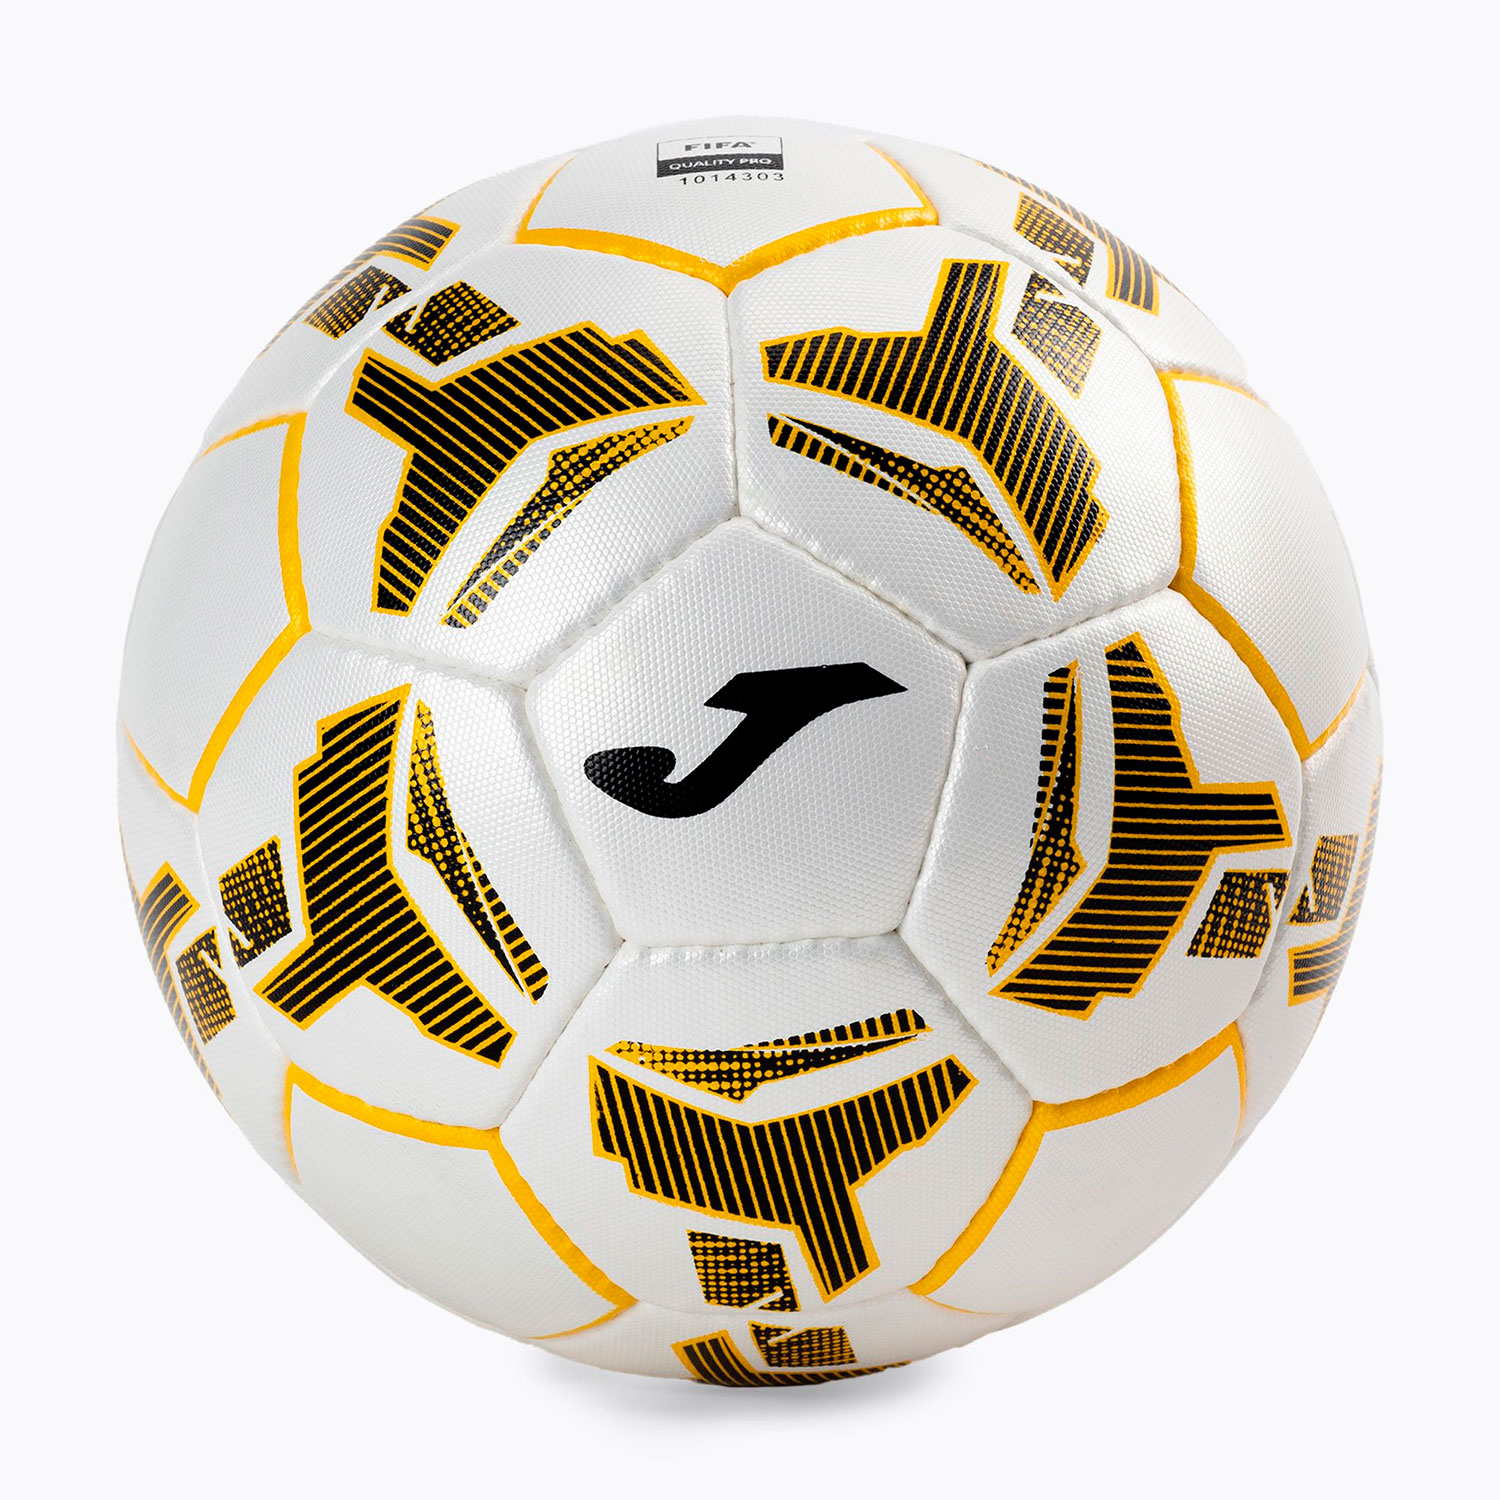 Мячи футбольные fifa quality pro. Футбольный мяч Joma. Белый мяч футбольный Joma. Футбольный мяч Joma Flame.